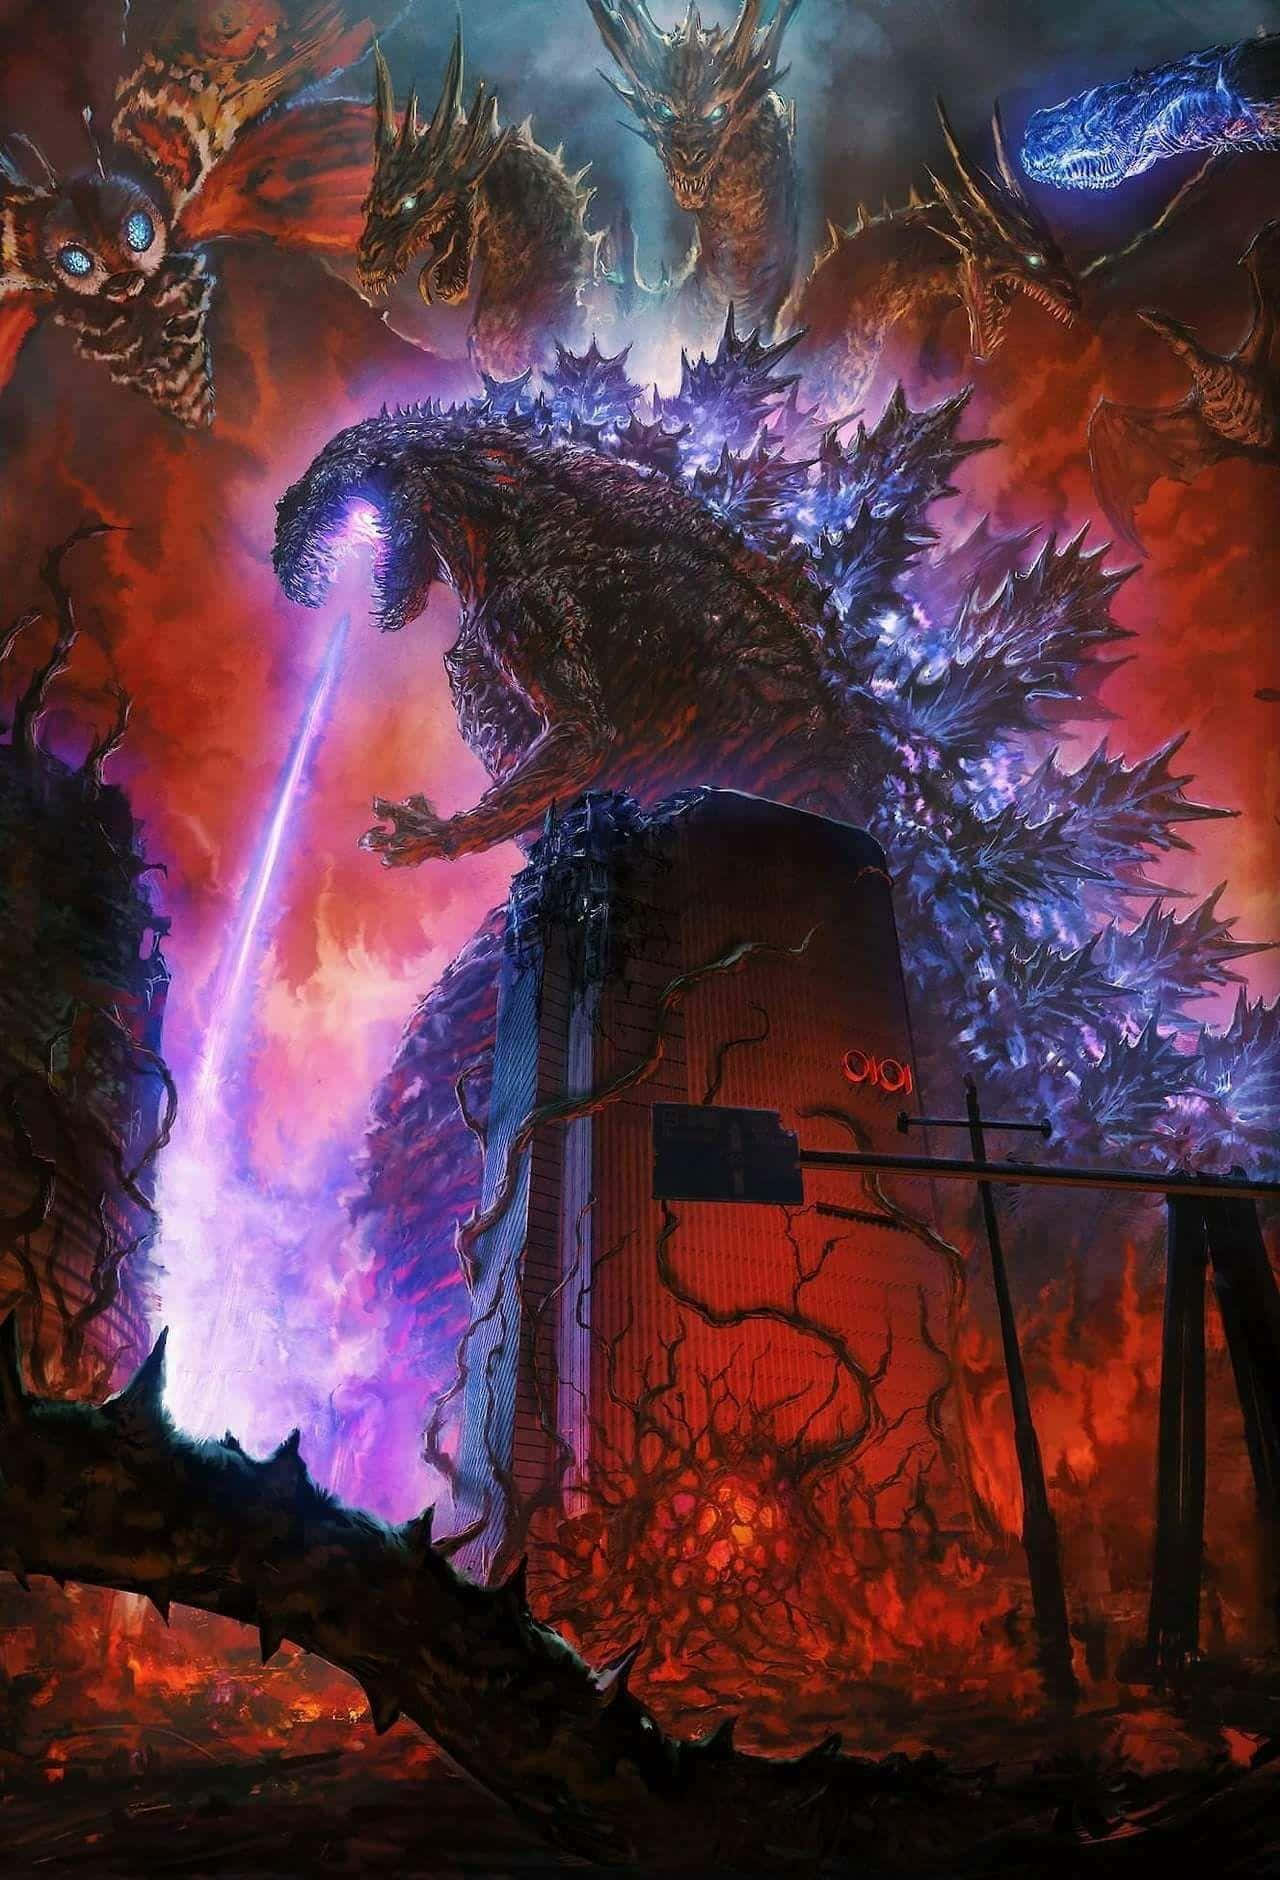 Burning Godzilla Unleashing Destruction Wallpaper